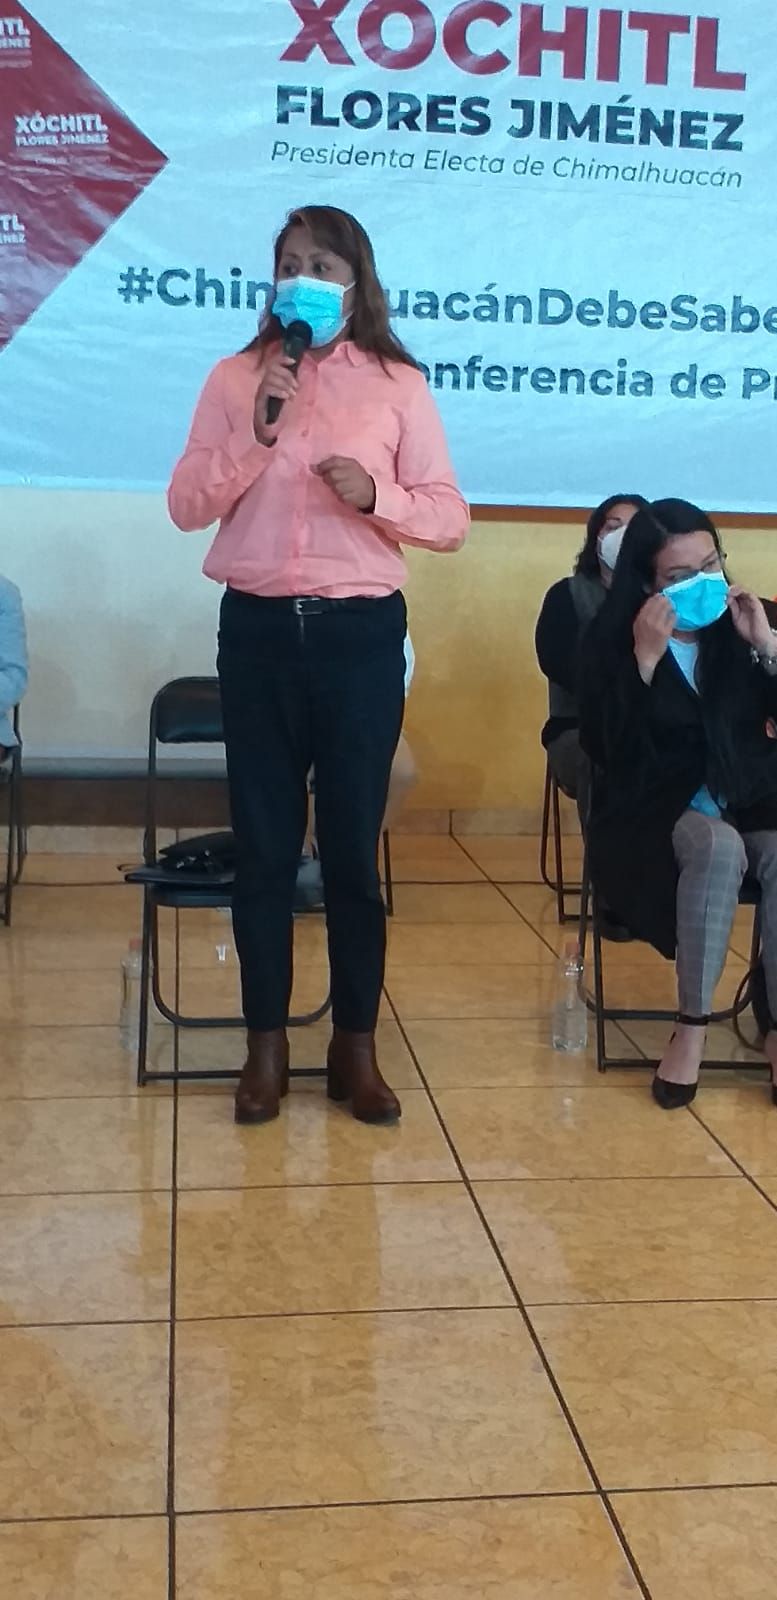 #La alcaldesa electa de Chimalhuacán, Xóchitl Flores Jiménez dice que no tolerara abusos 